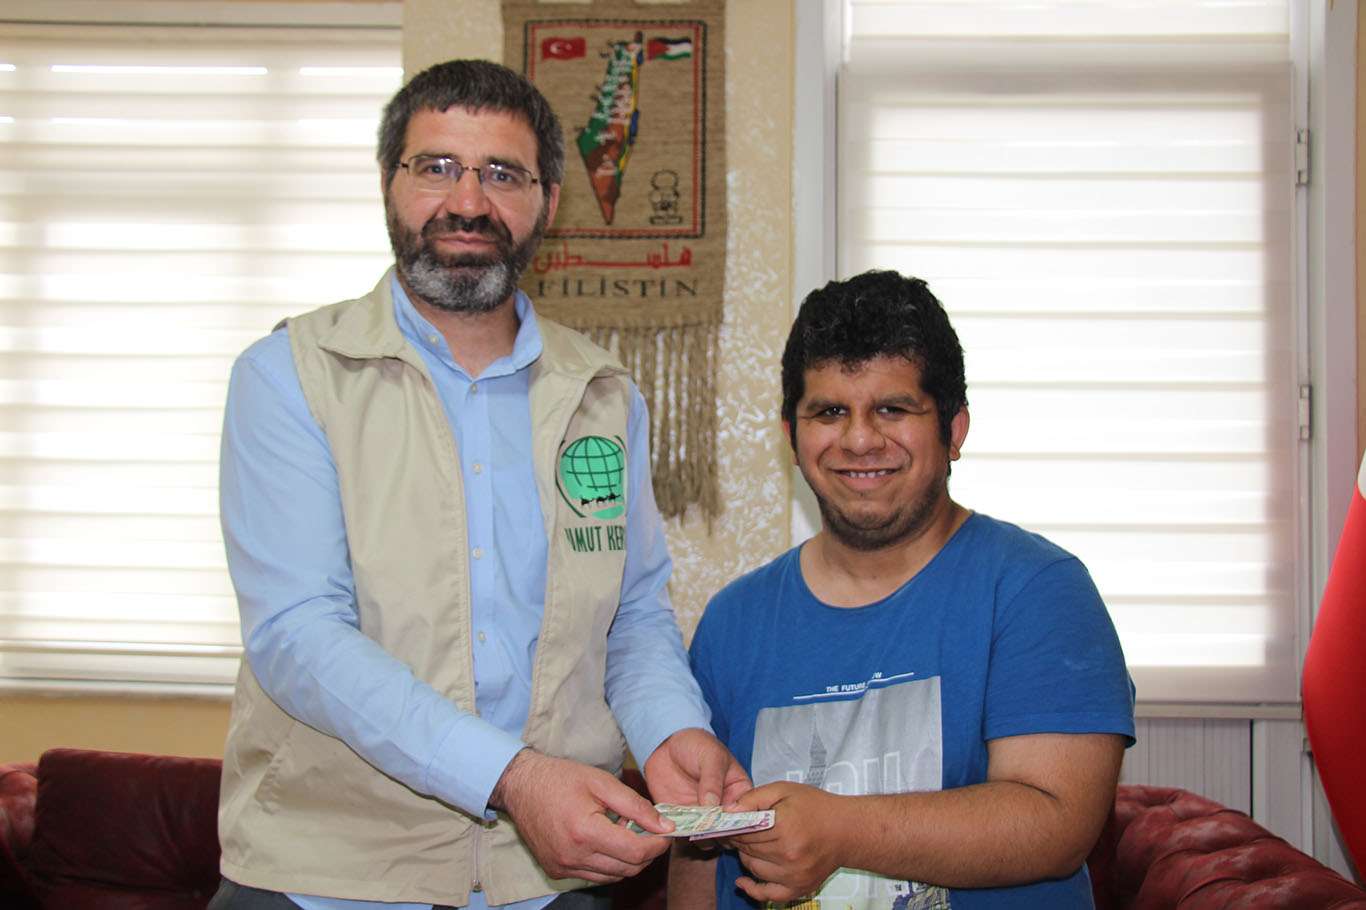 Engelli genç cep telefonu almak için biriktirdiği parayı Filistin'e bağışladı